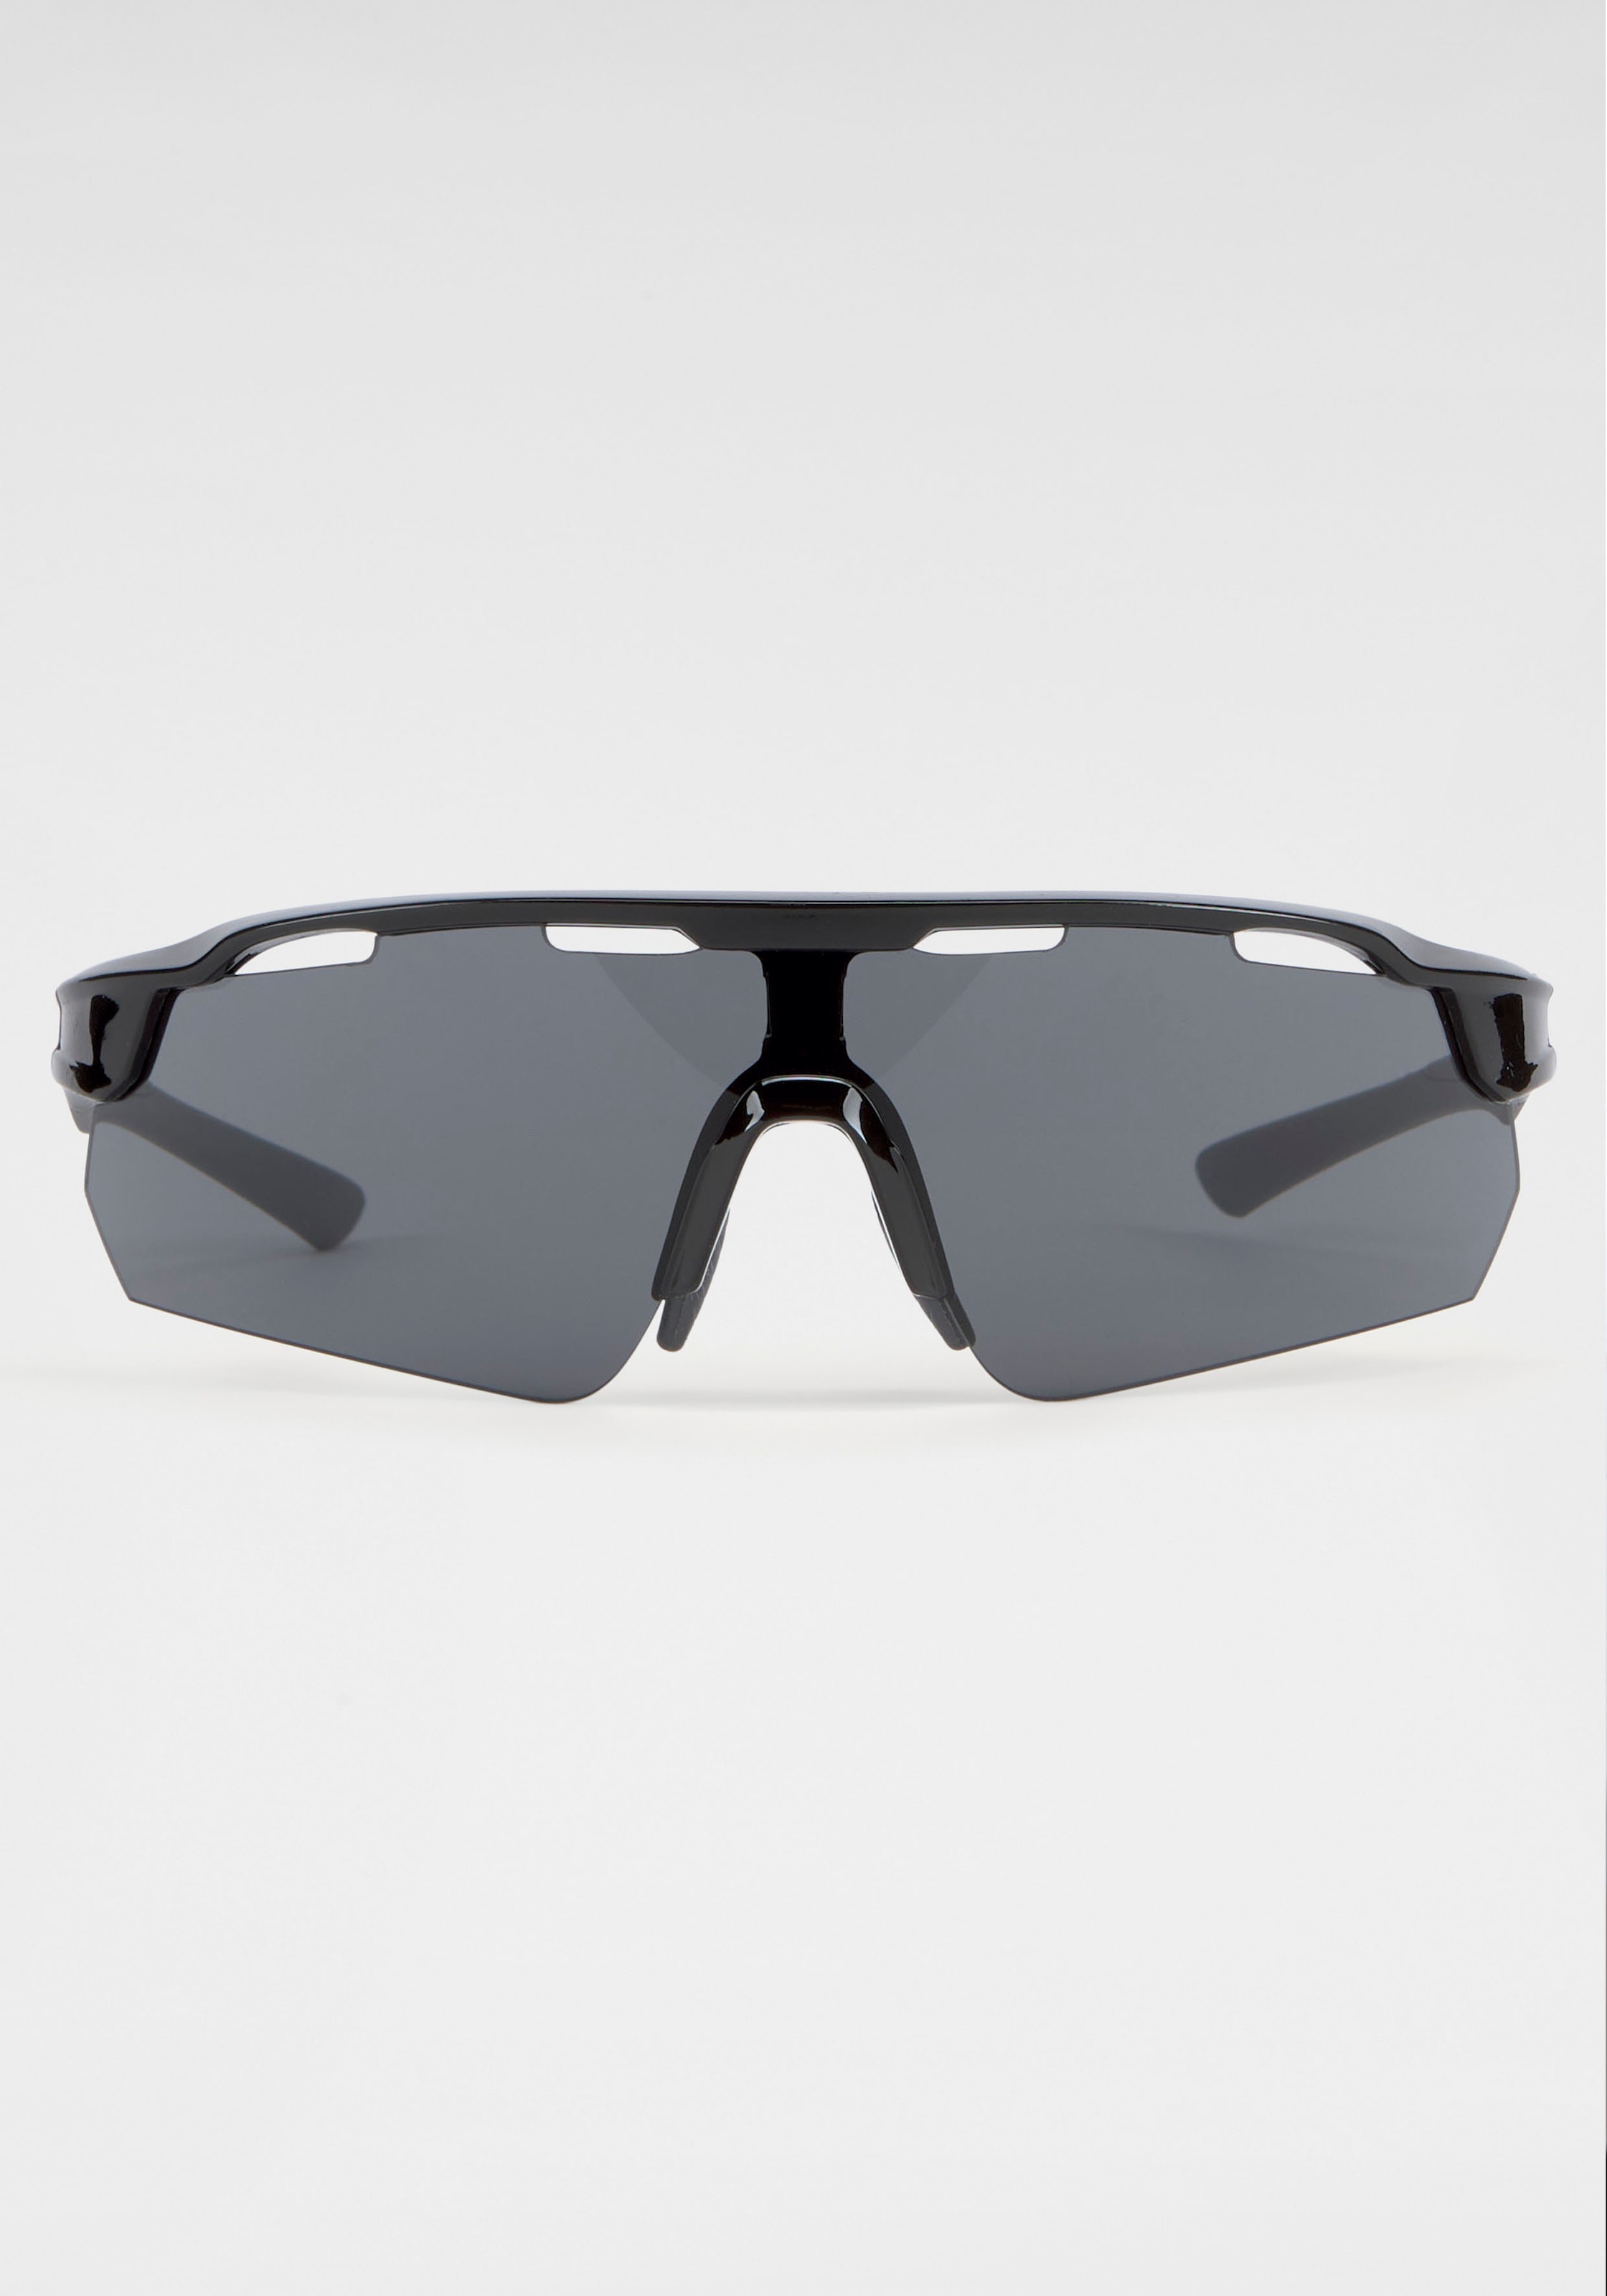 BACK IN BLACK Gläsern bestellen Eyewear gebogenen mit Sonnenbrille